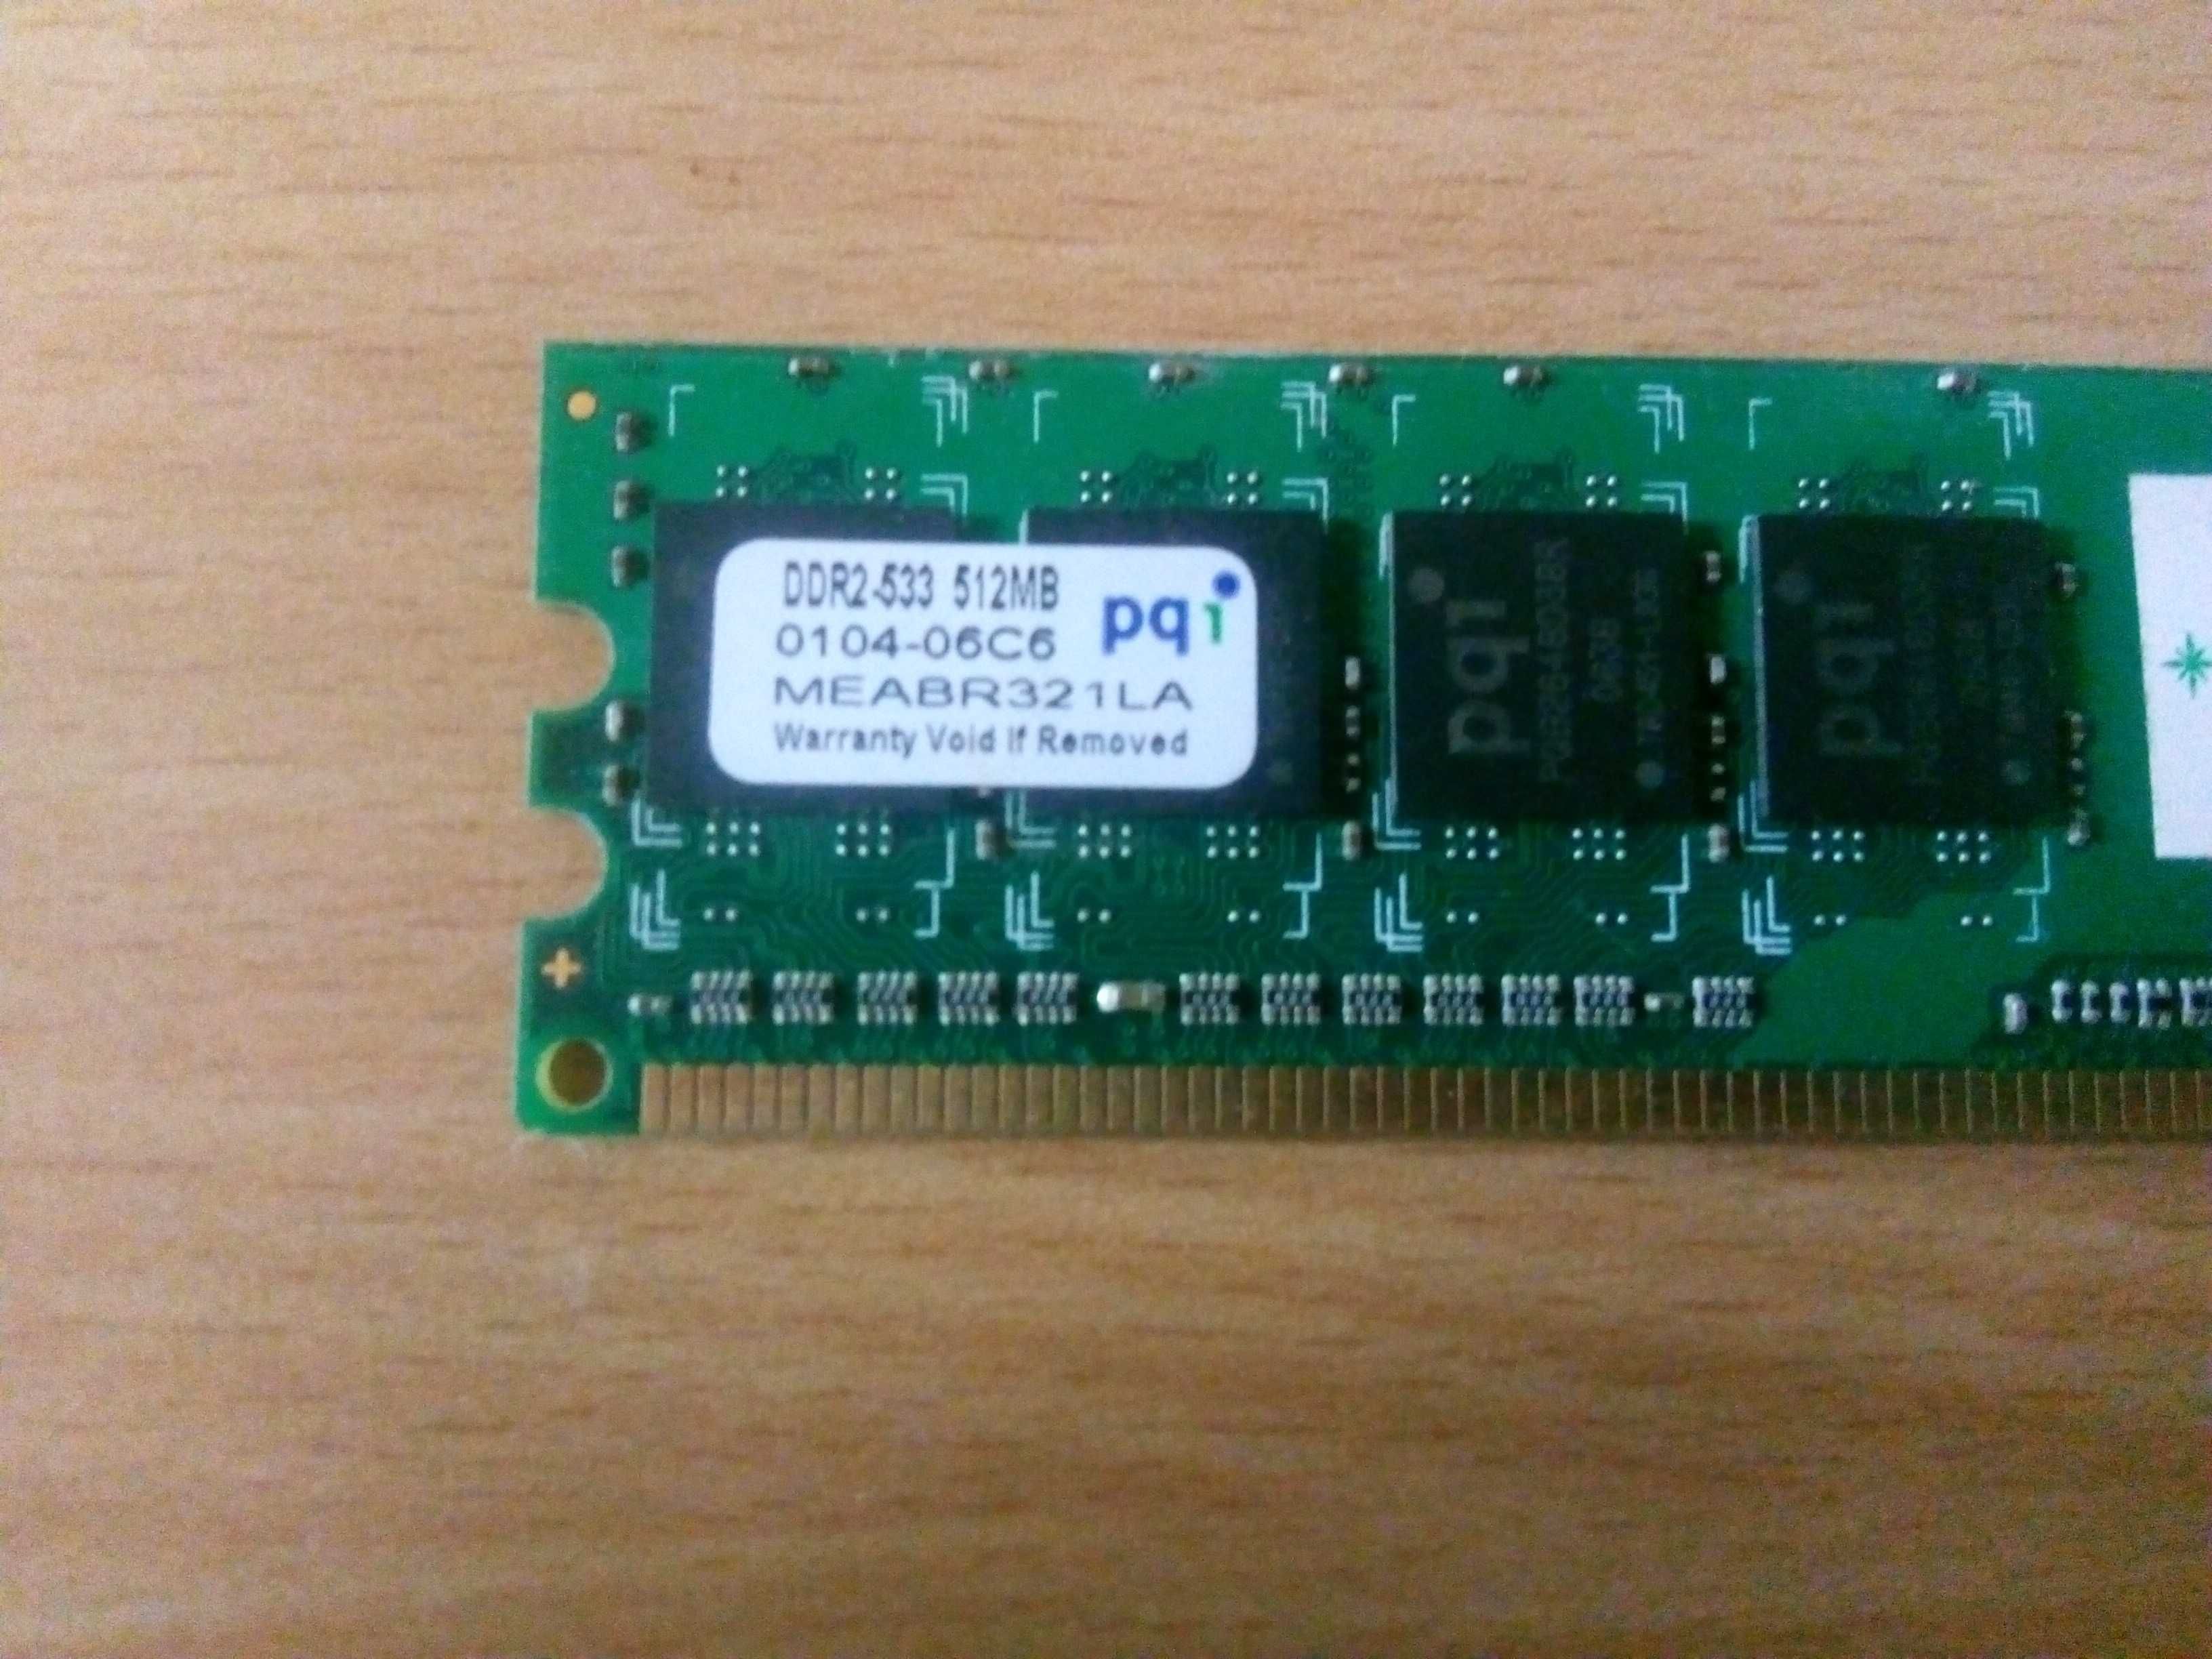 RAM памет за компютър DDR2